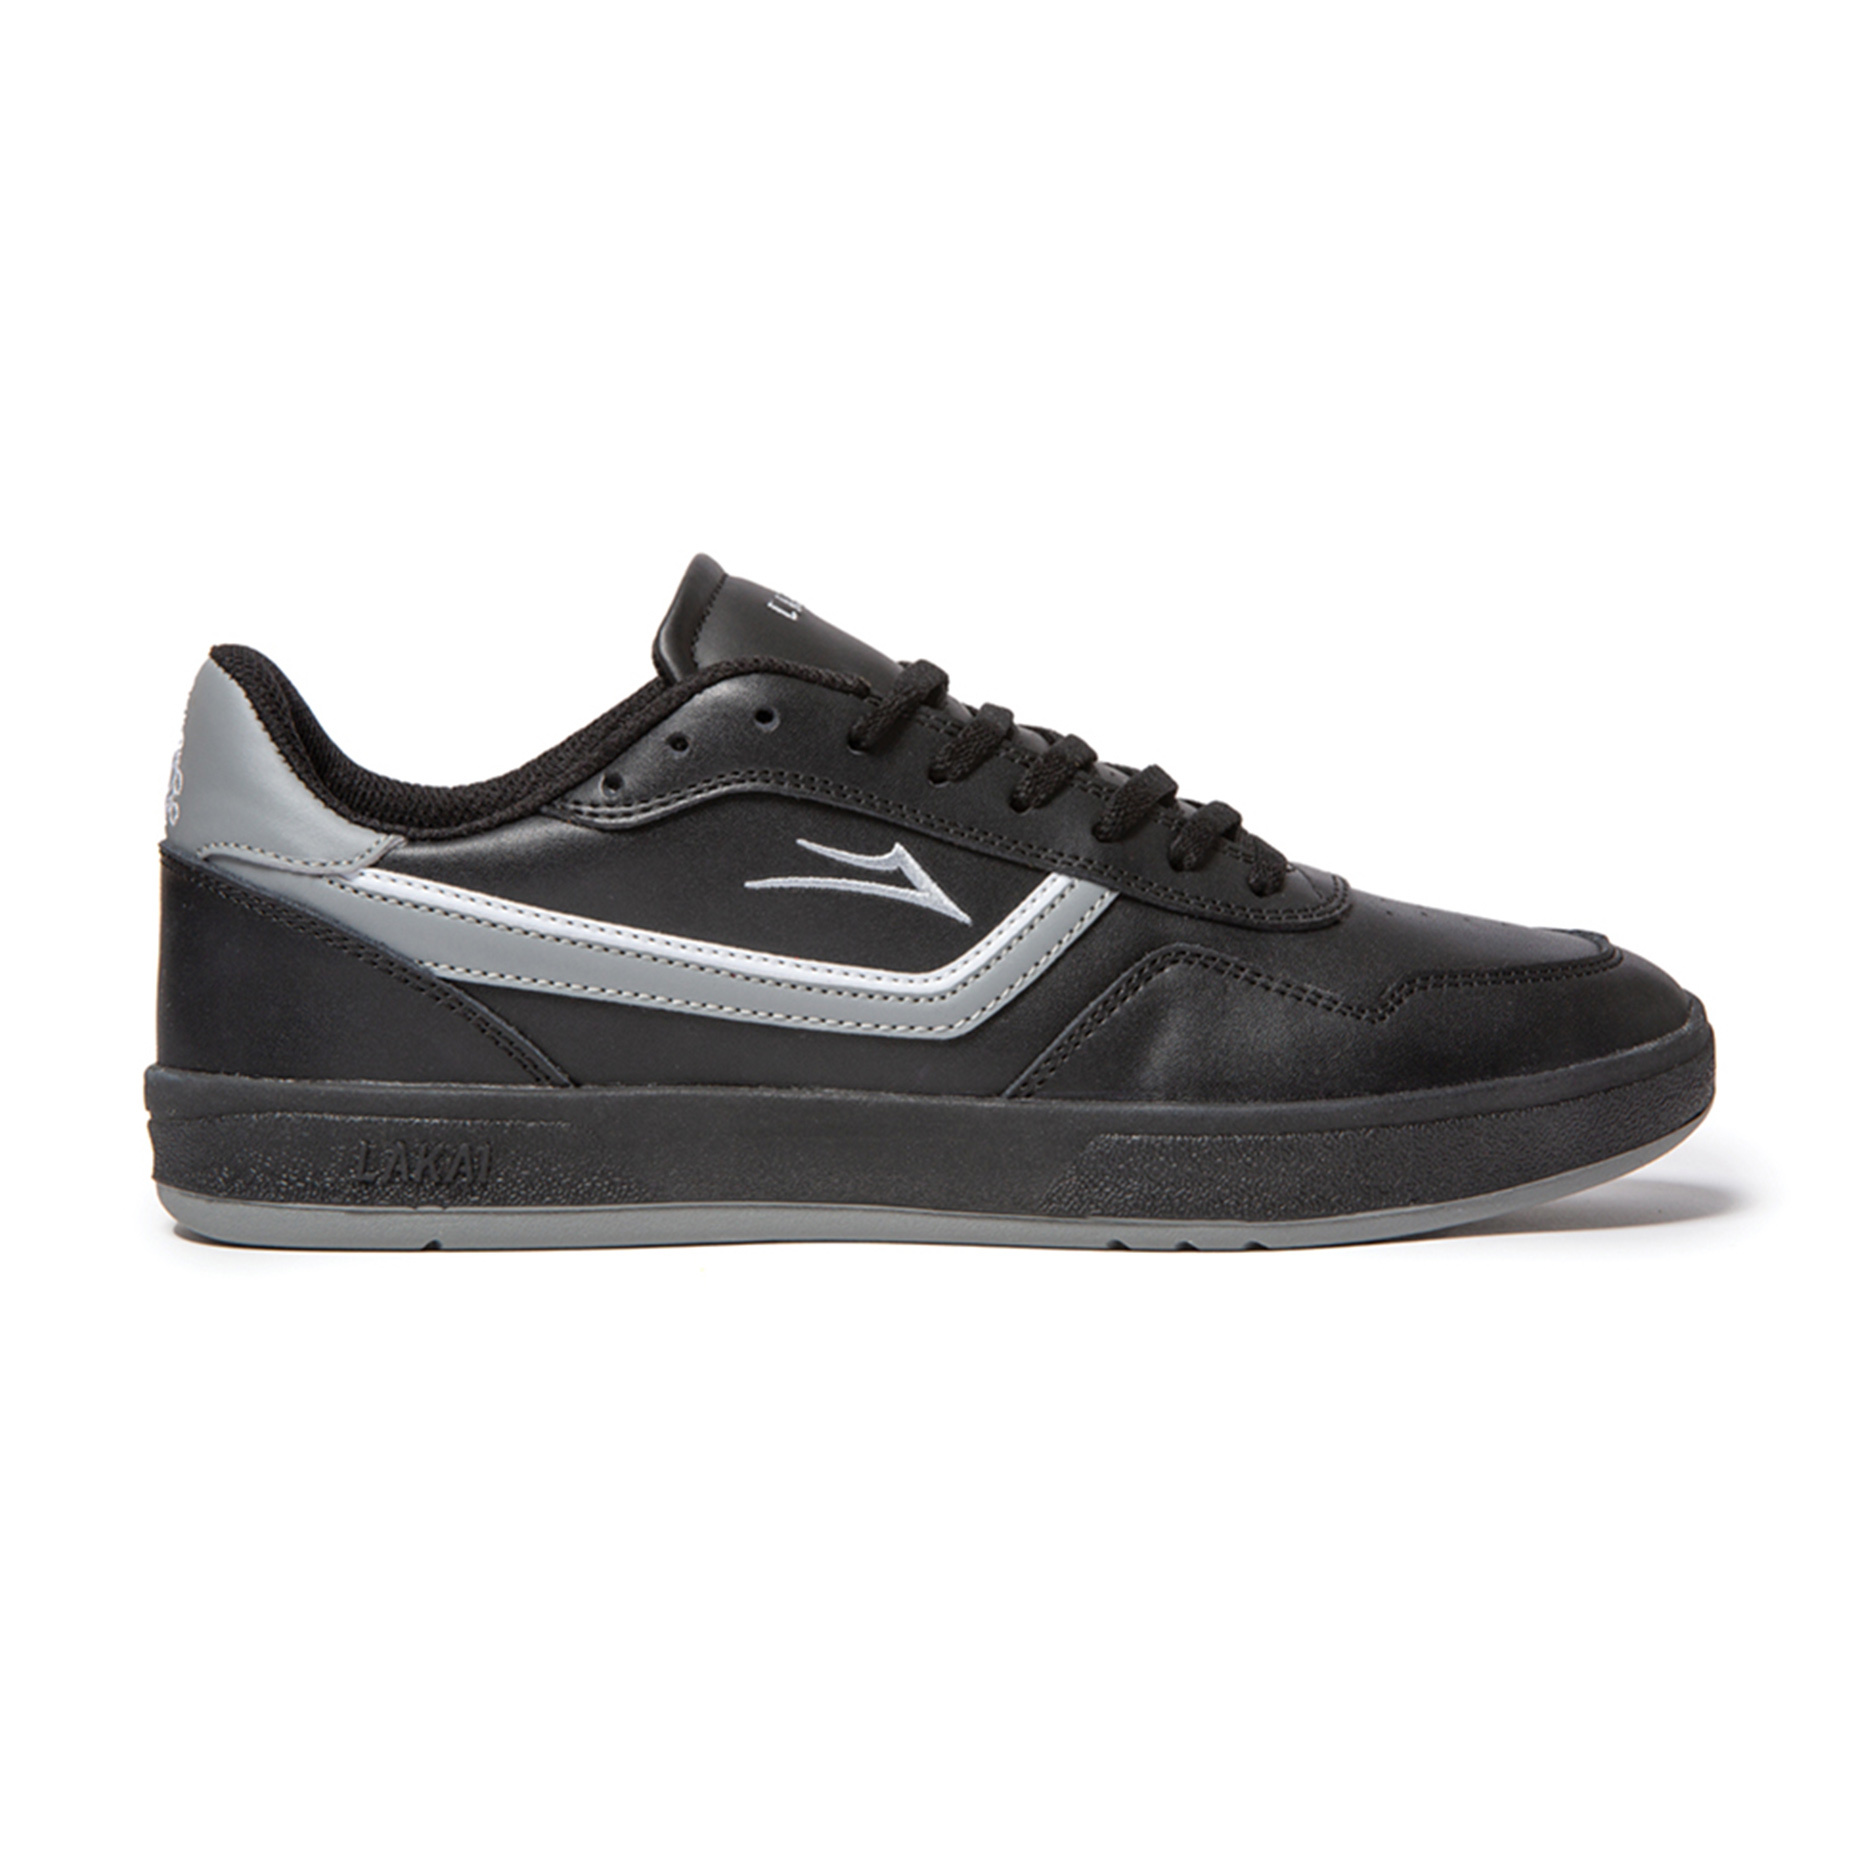 Lakai Terrace Skate Shoe - Black/Black Leather | BOARDWORLD Store